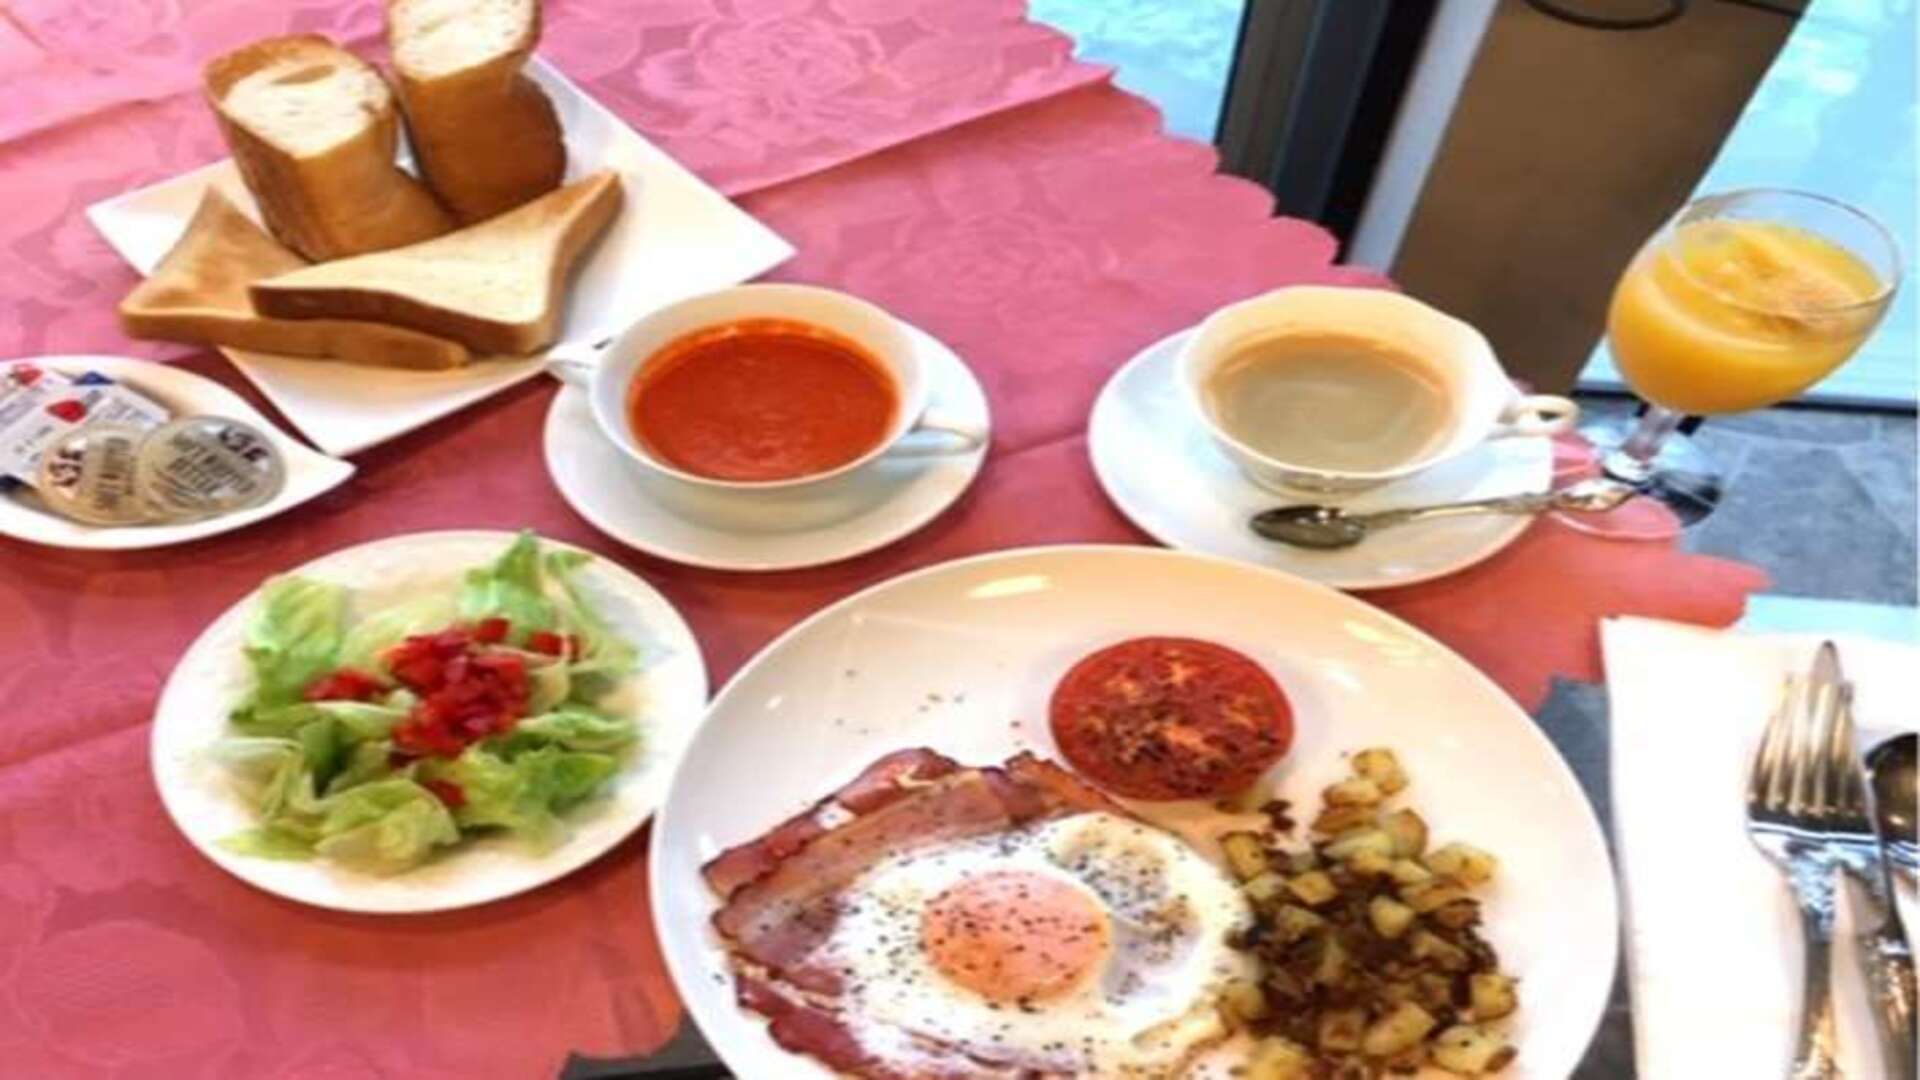 ドイツ人シェフ特製の卵料理、ポテト料理、日替わりのスープがついた朝食です